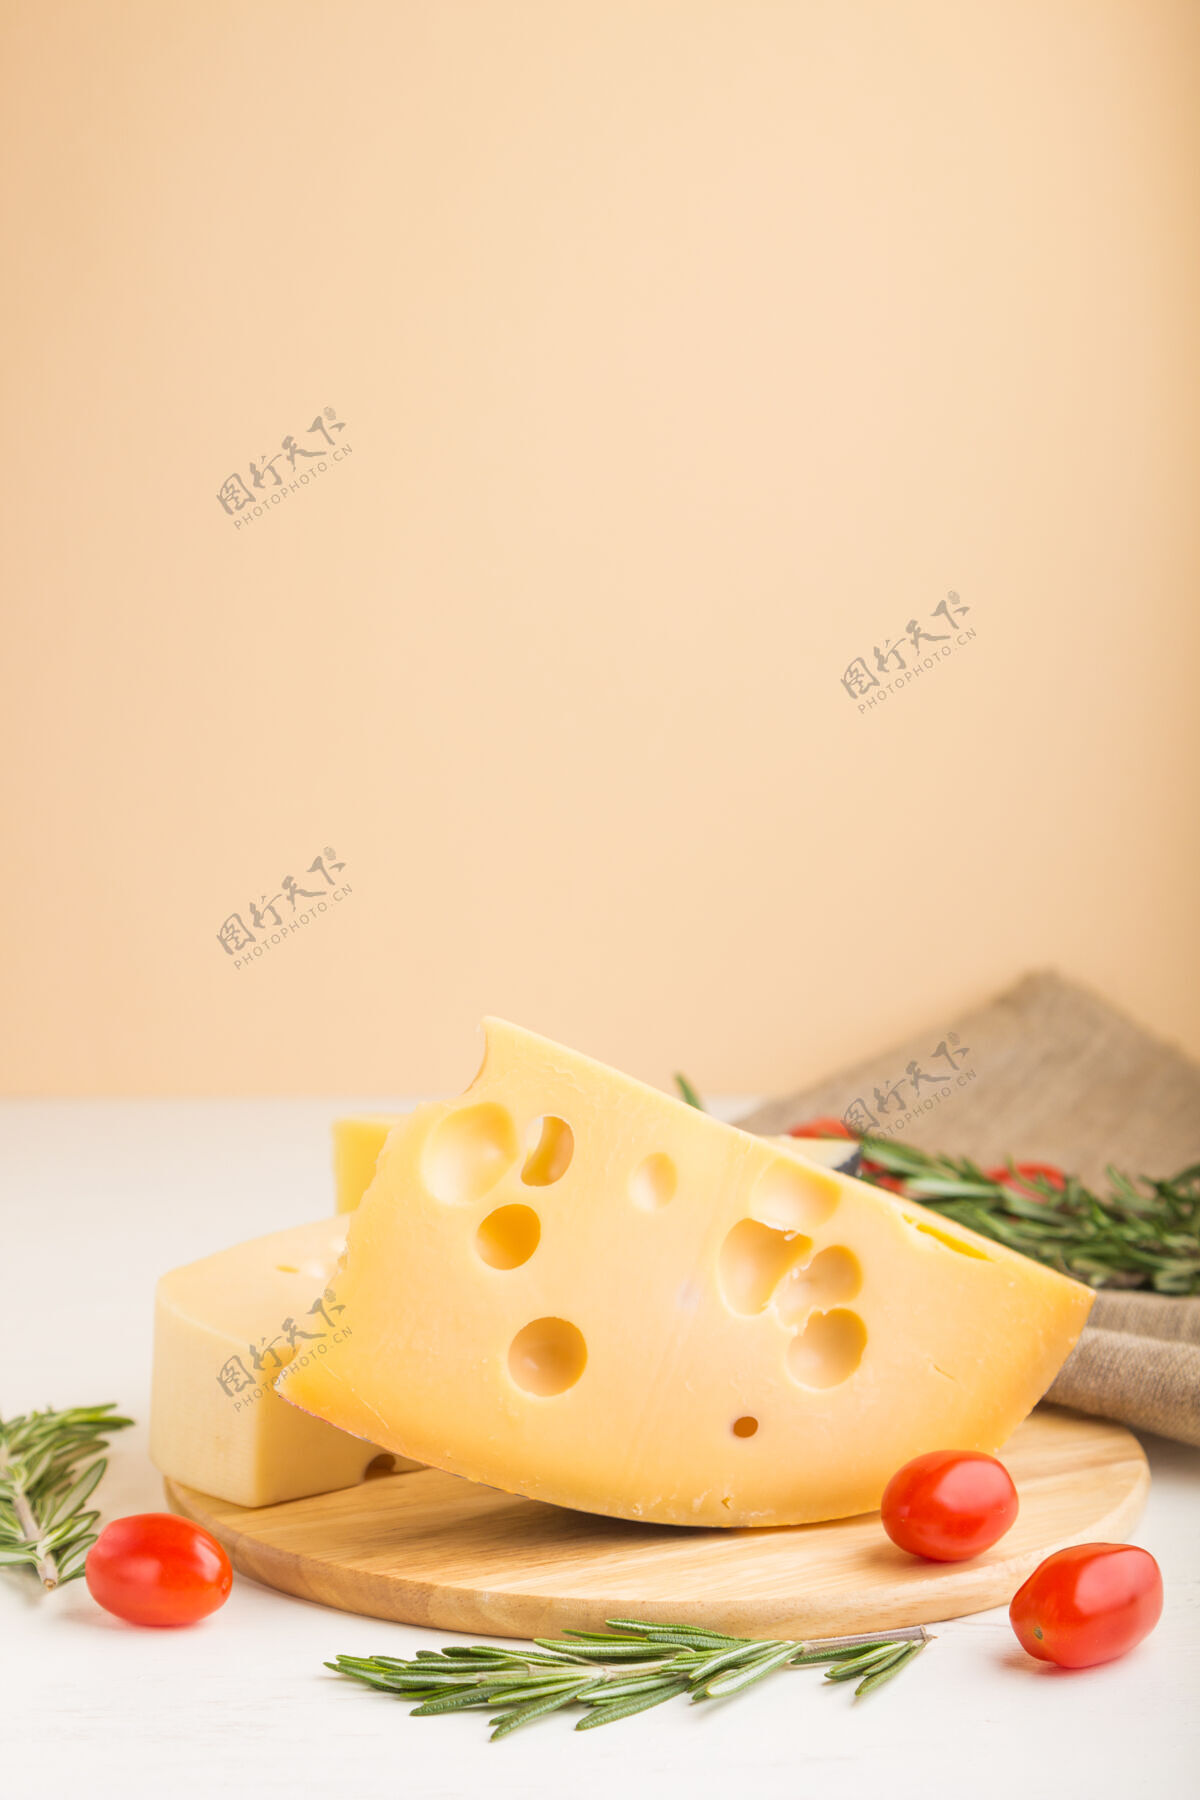 帕尔马干酪各种类型的奶酪 迷迭香和西红柿放在木板上 表面是白色和橙色 亚麻织物复制空间自然迷迭香